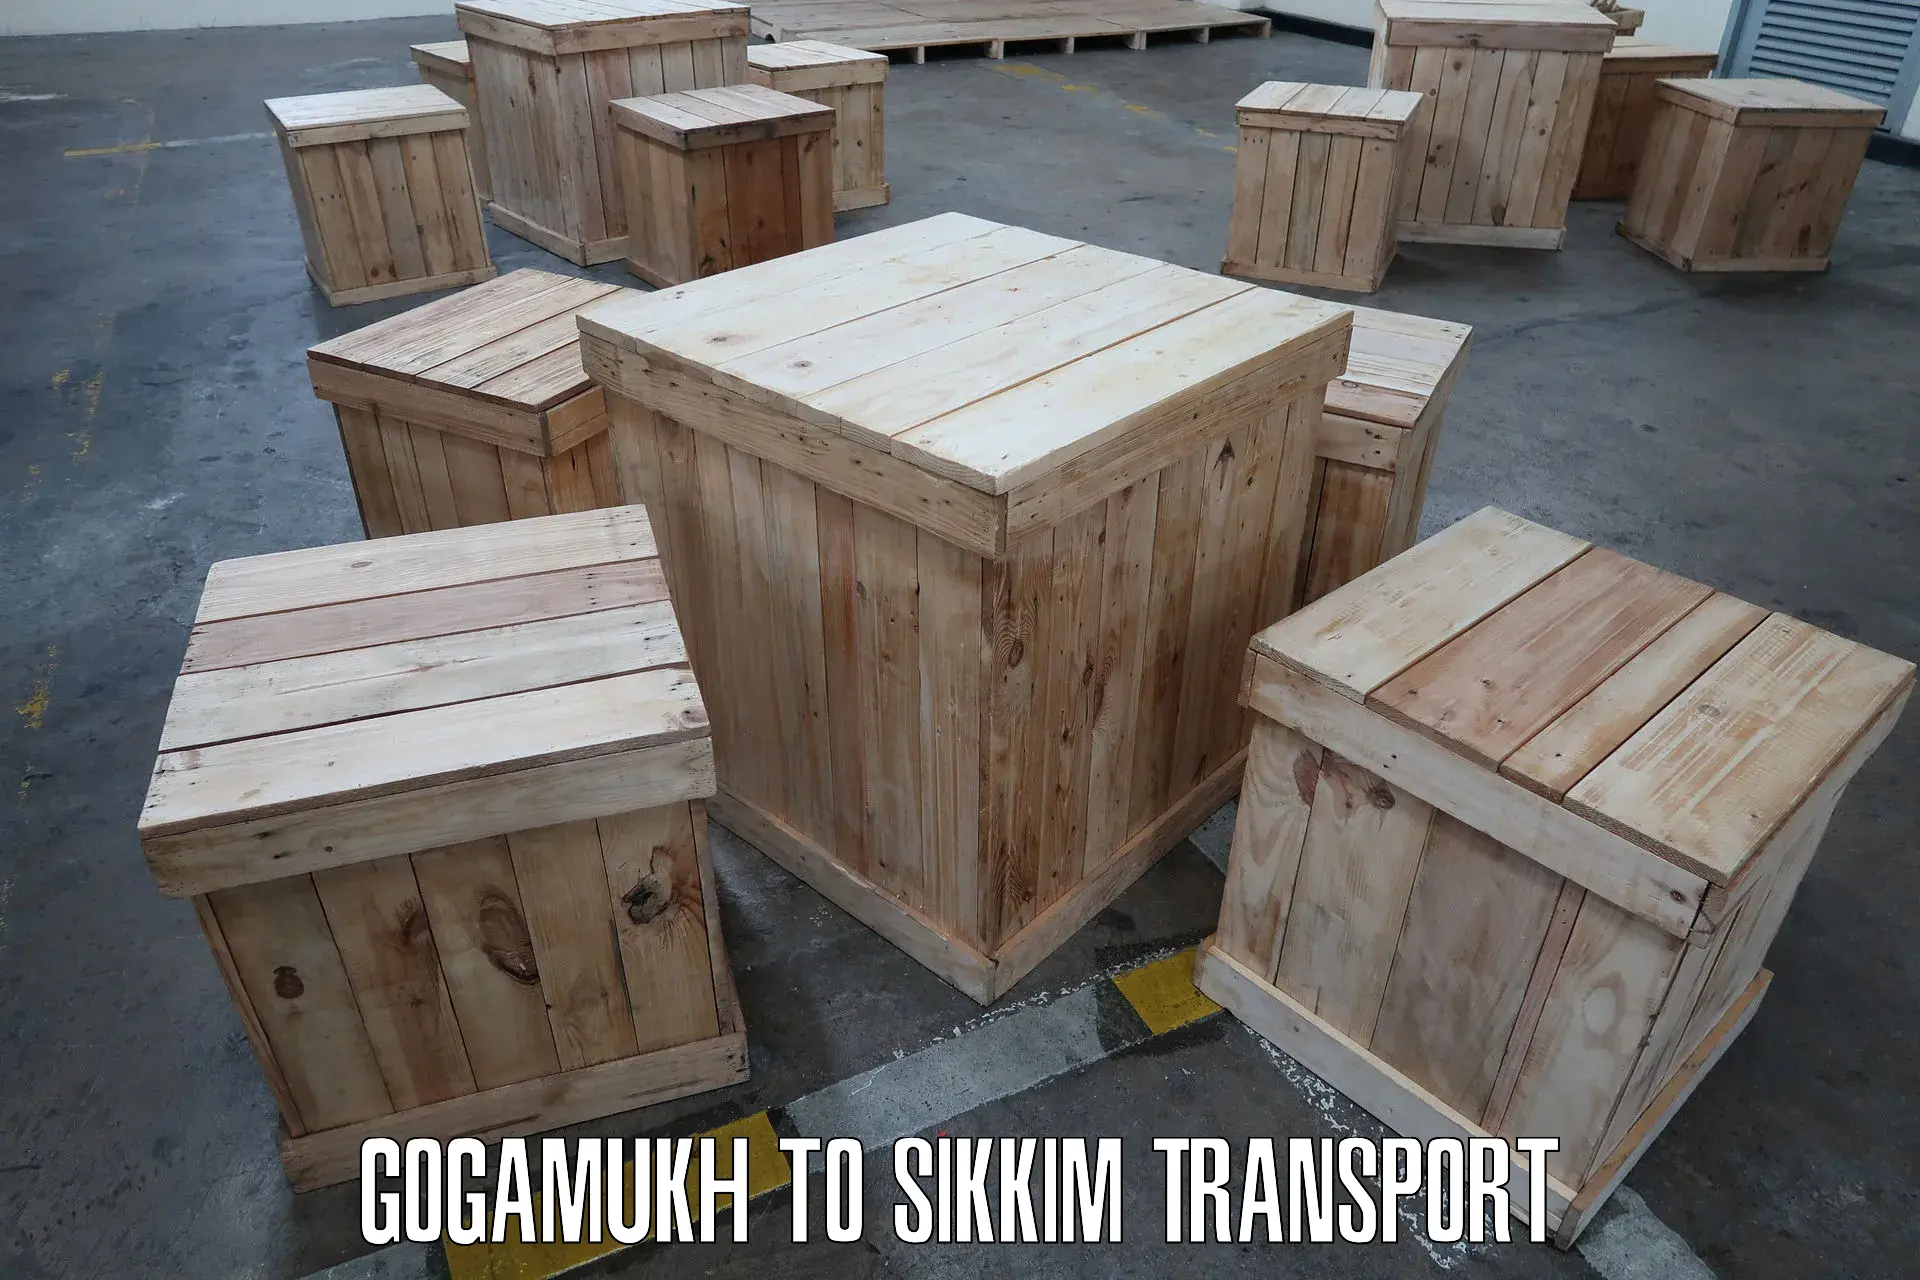 Cargo transport services Gogamukh to Rangpo